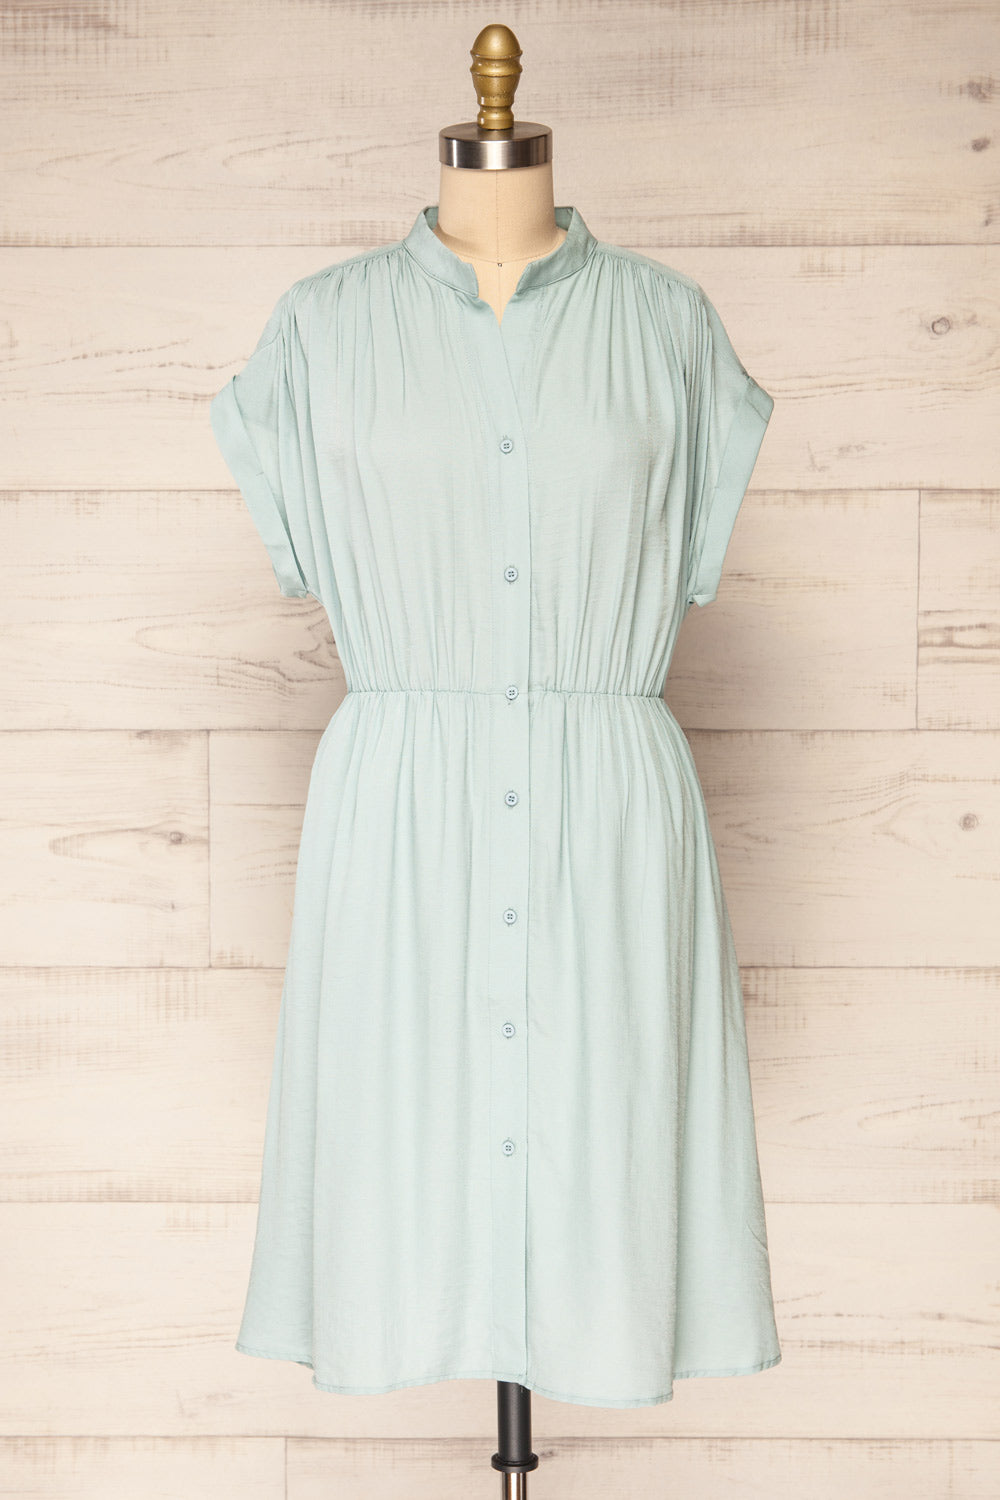 Yhoanis Blue Button-Up Short Dress | La petite garçonne front view